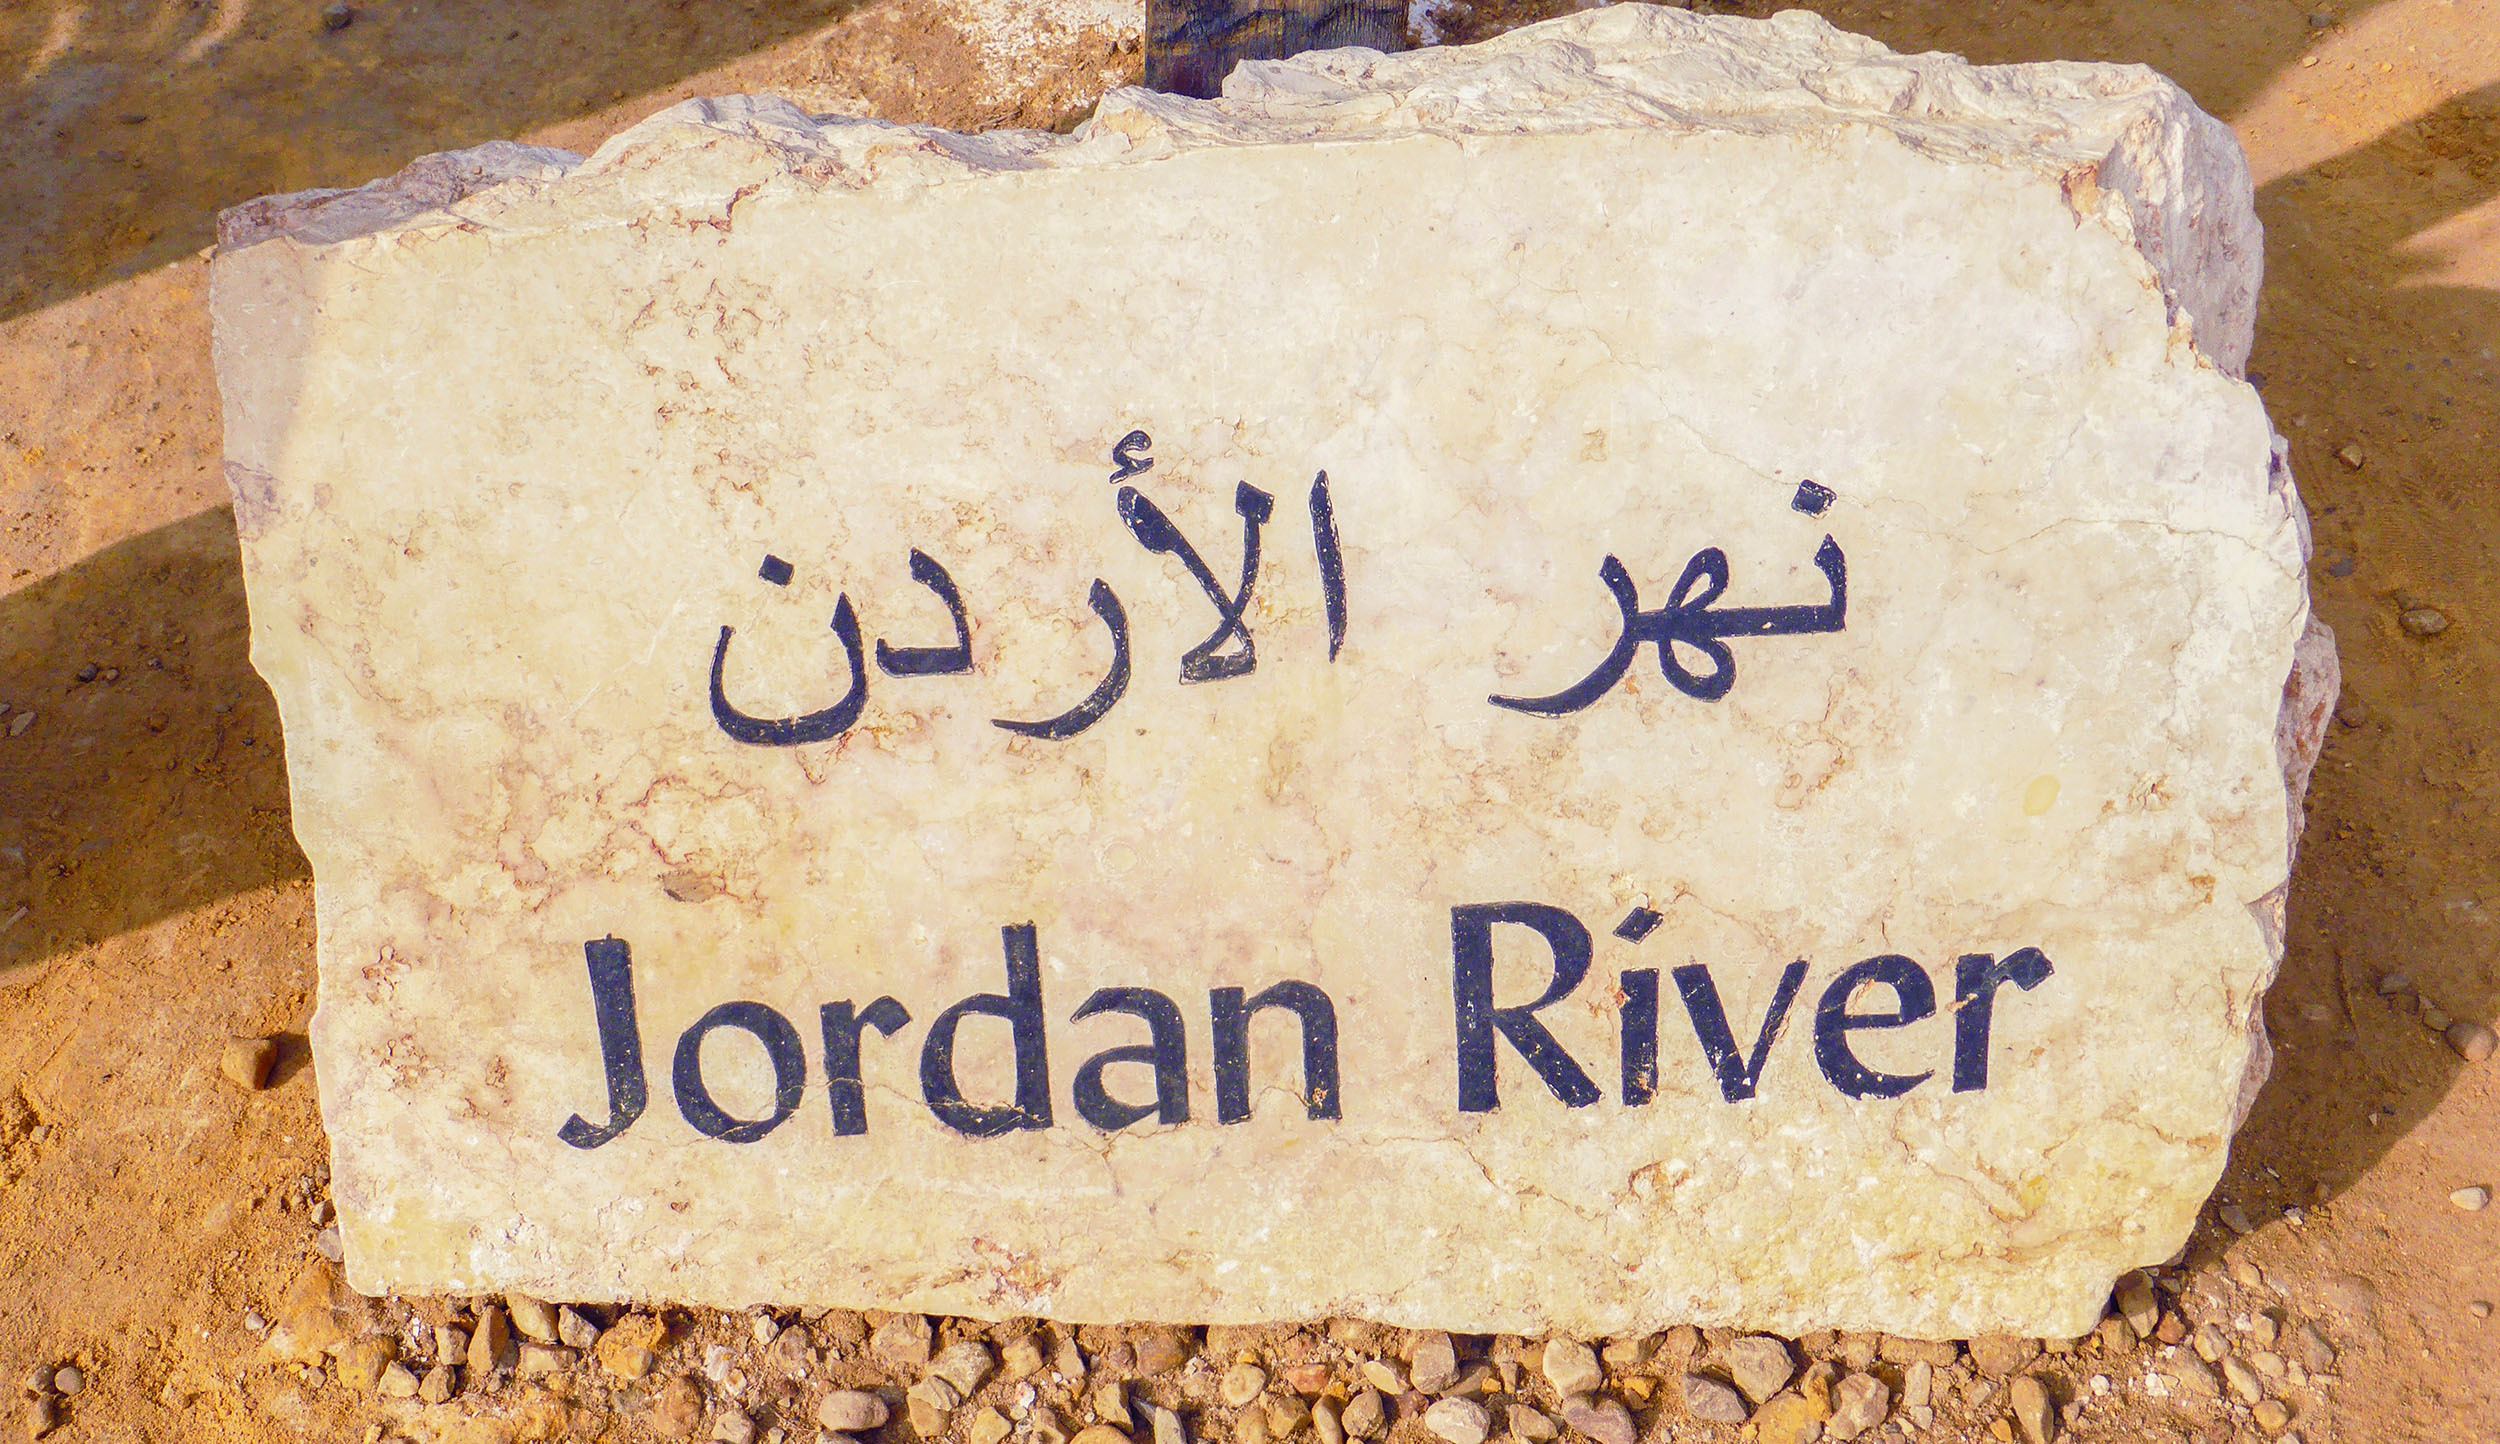 Jordan River sign at Bethany Beyond the River in Jordan